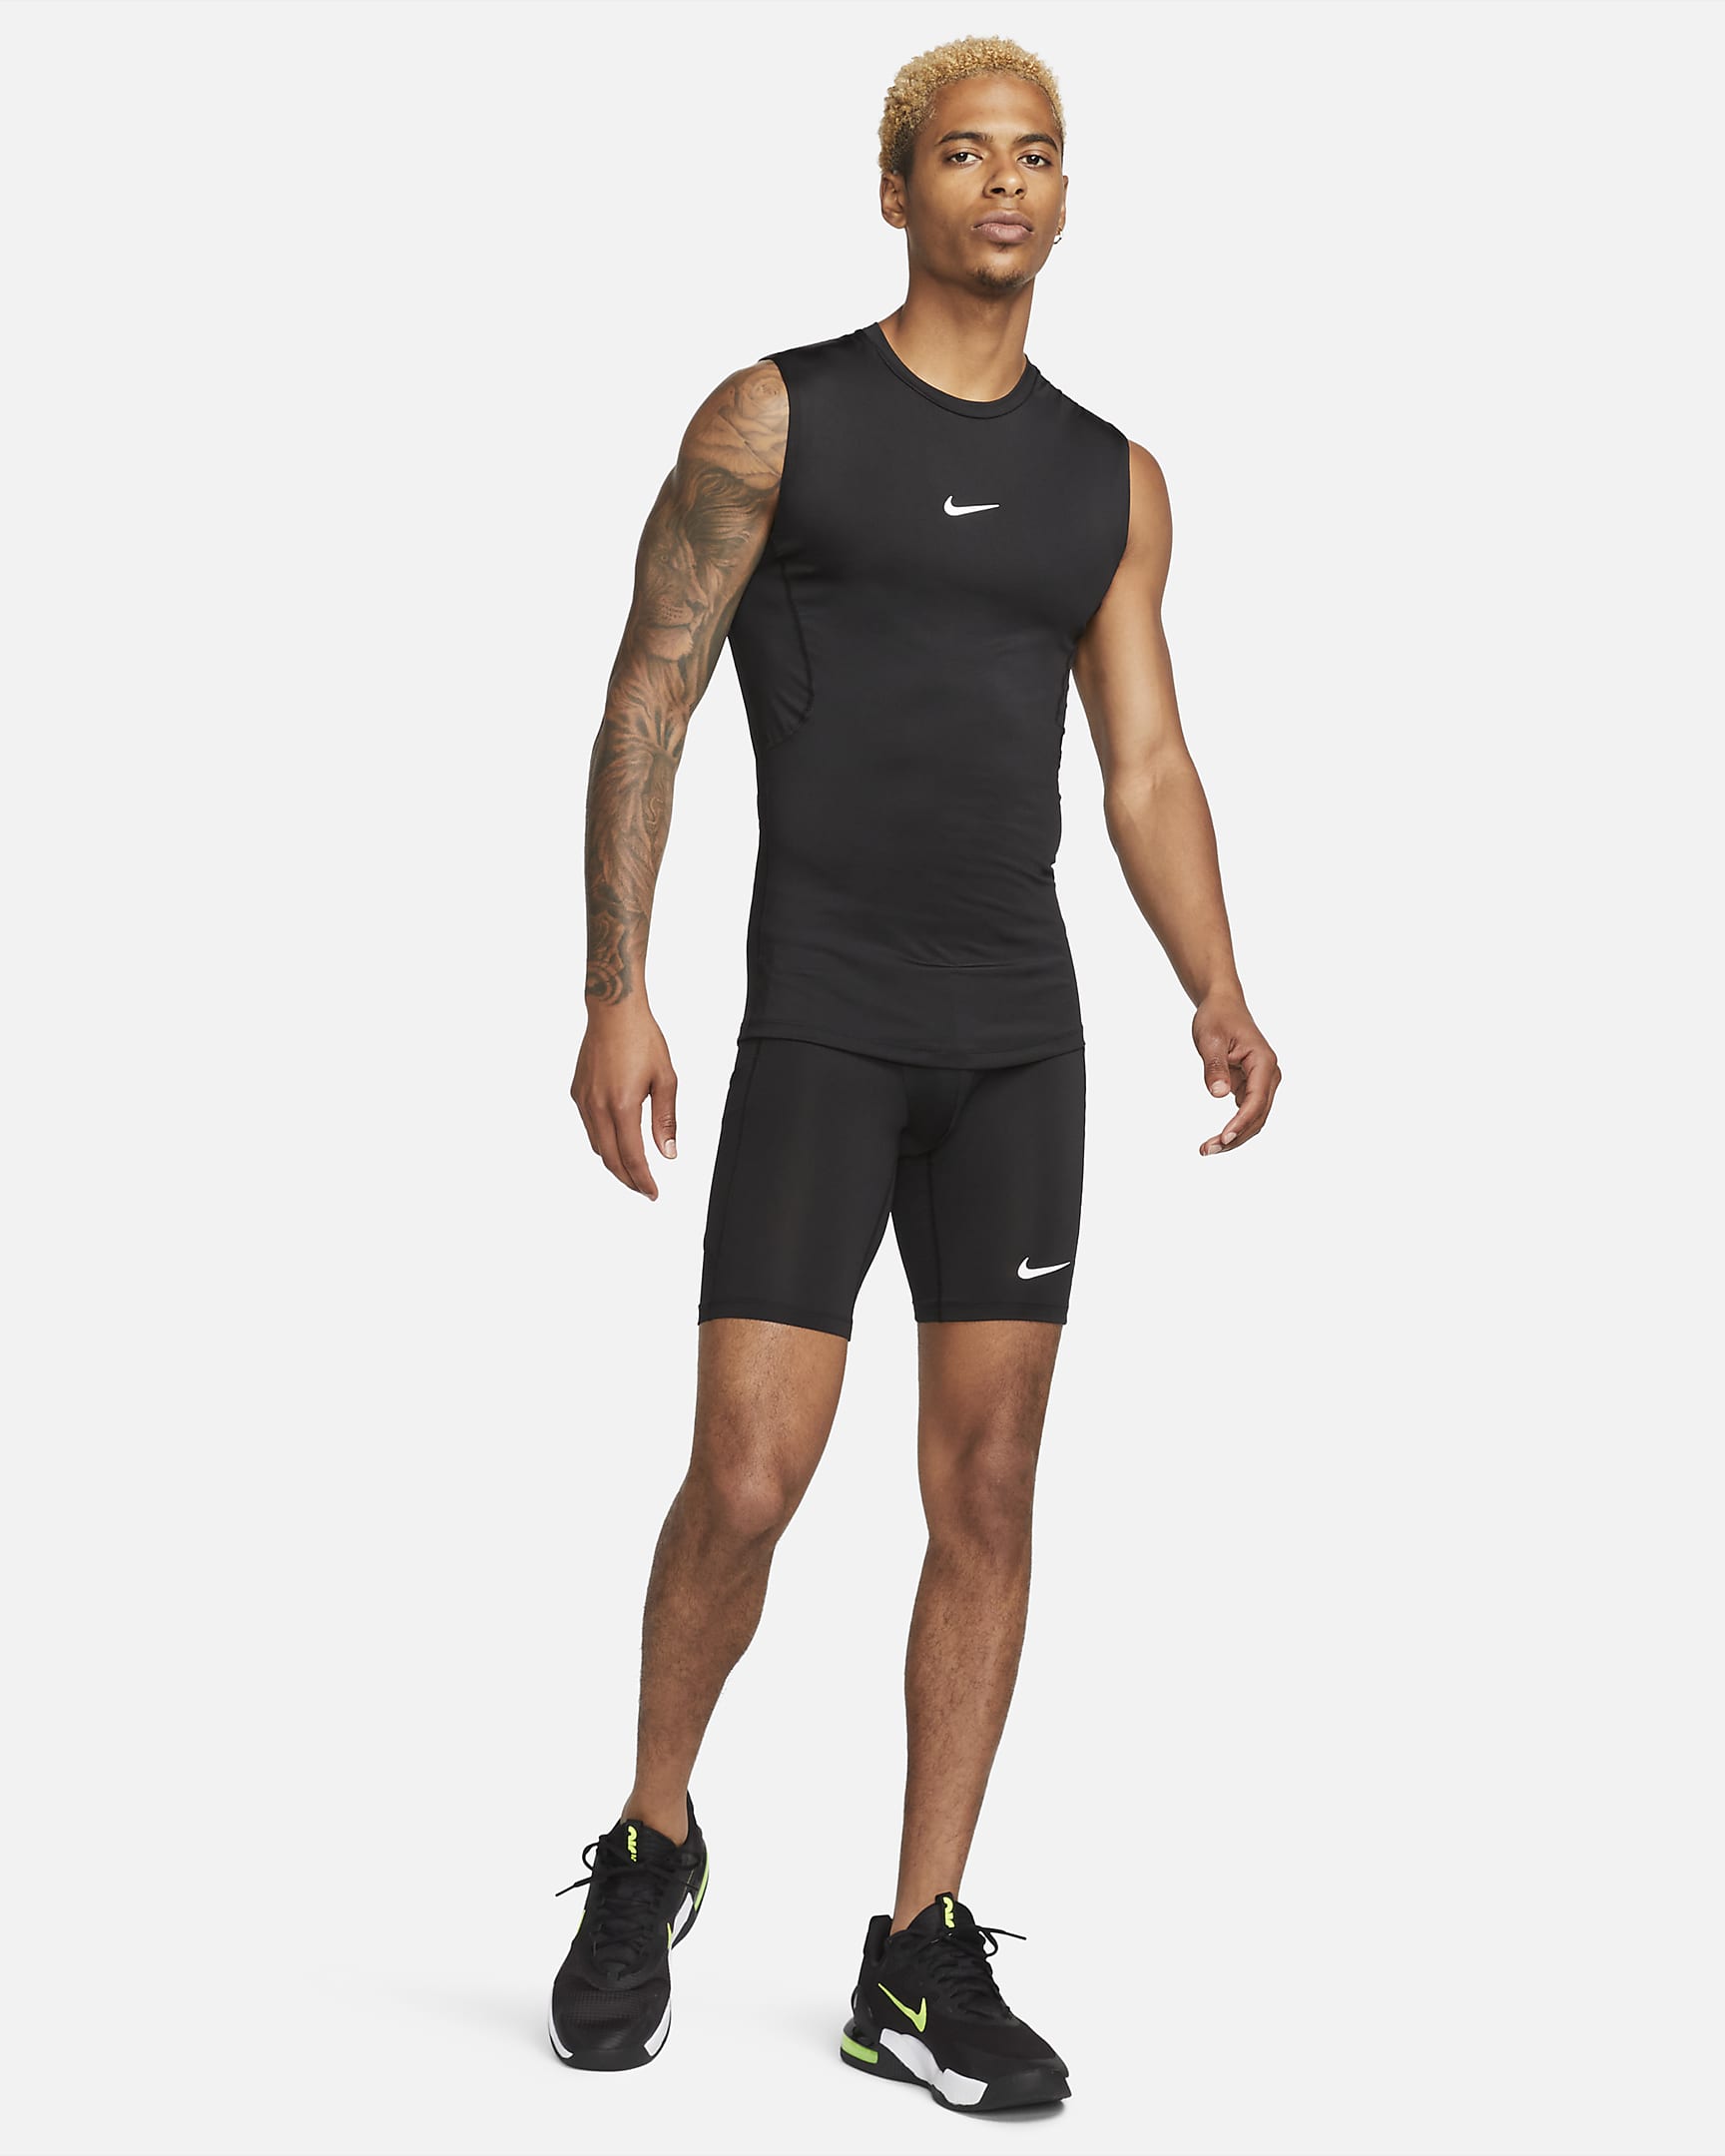 Nike Pro Men's Dri-FIT Tight Sleeveless Fitness Top - Black/White